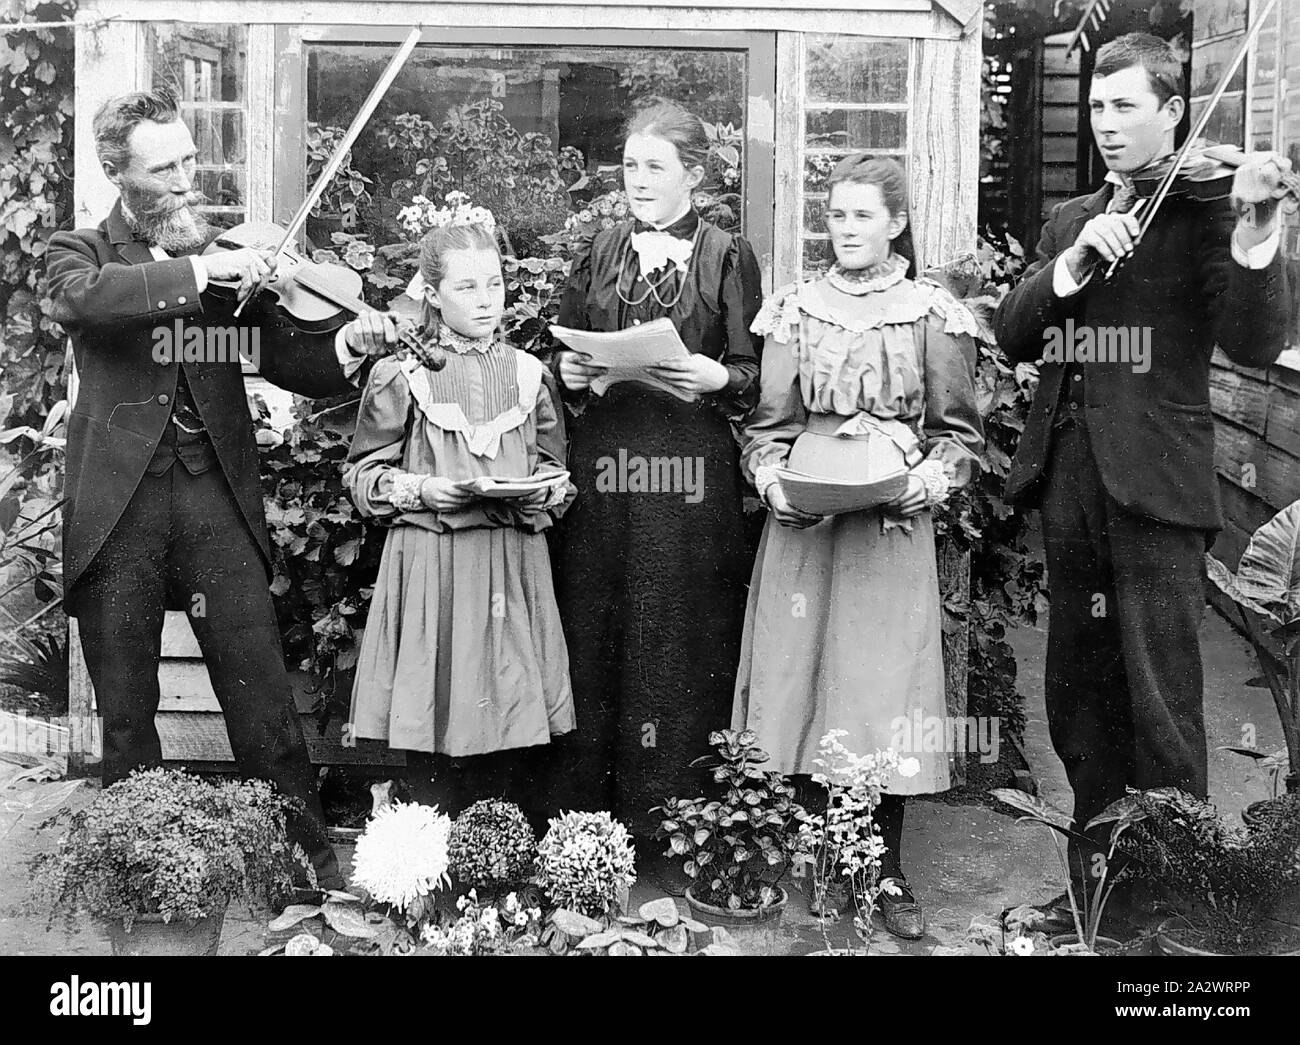 Negativo - Merino District (?), Victoria, pre 1910, una famiglia gruppo musicale in un giardino. I due uomini giocano violini mentre la donna e due ragazze giovani cantare. I cantanti sono i punteggi di contenimento Foto Stock